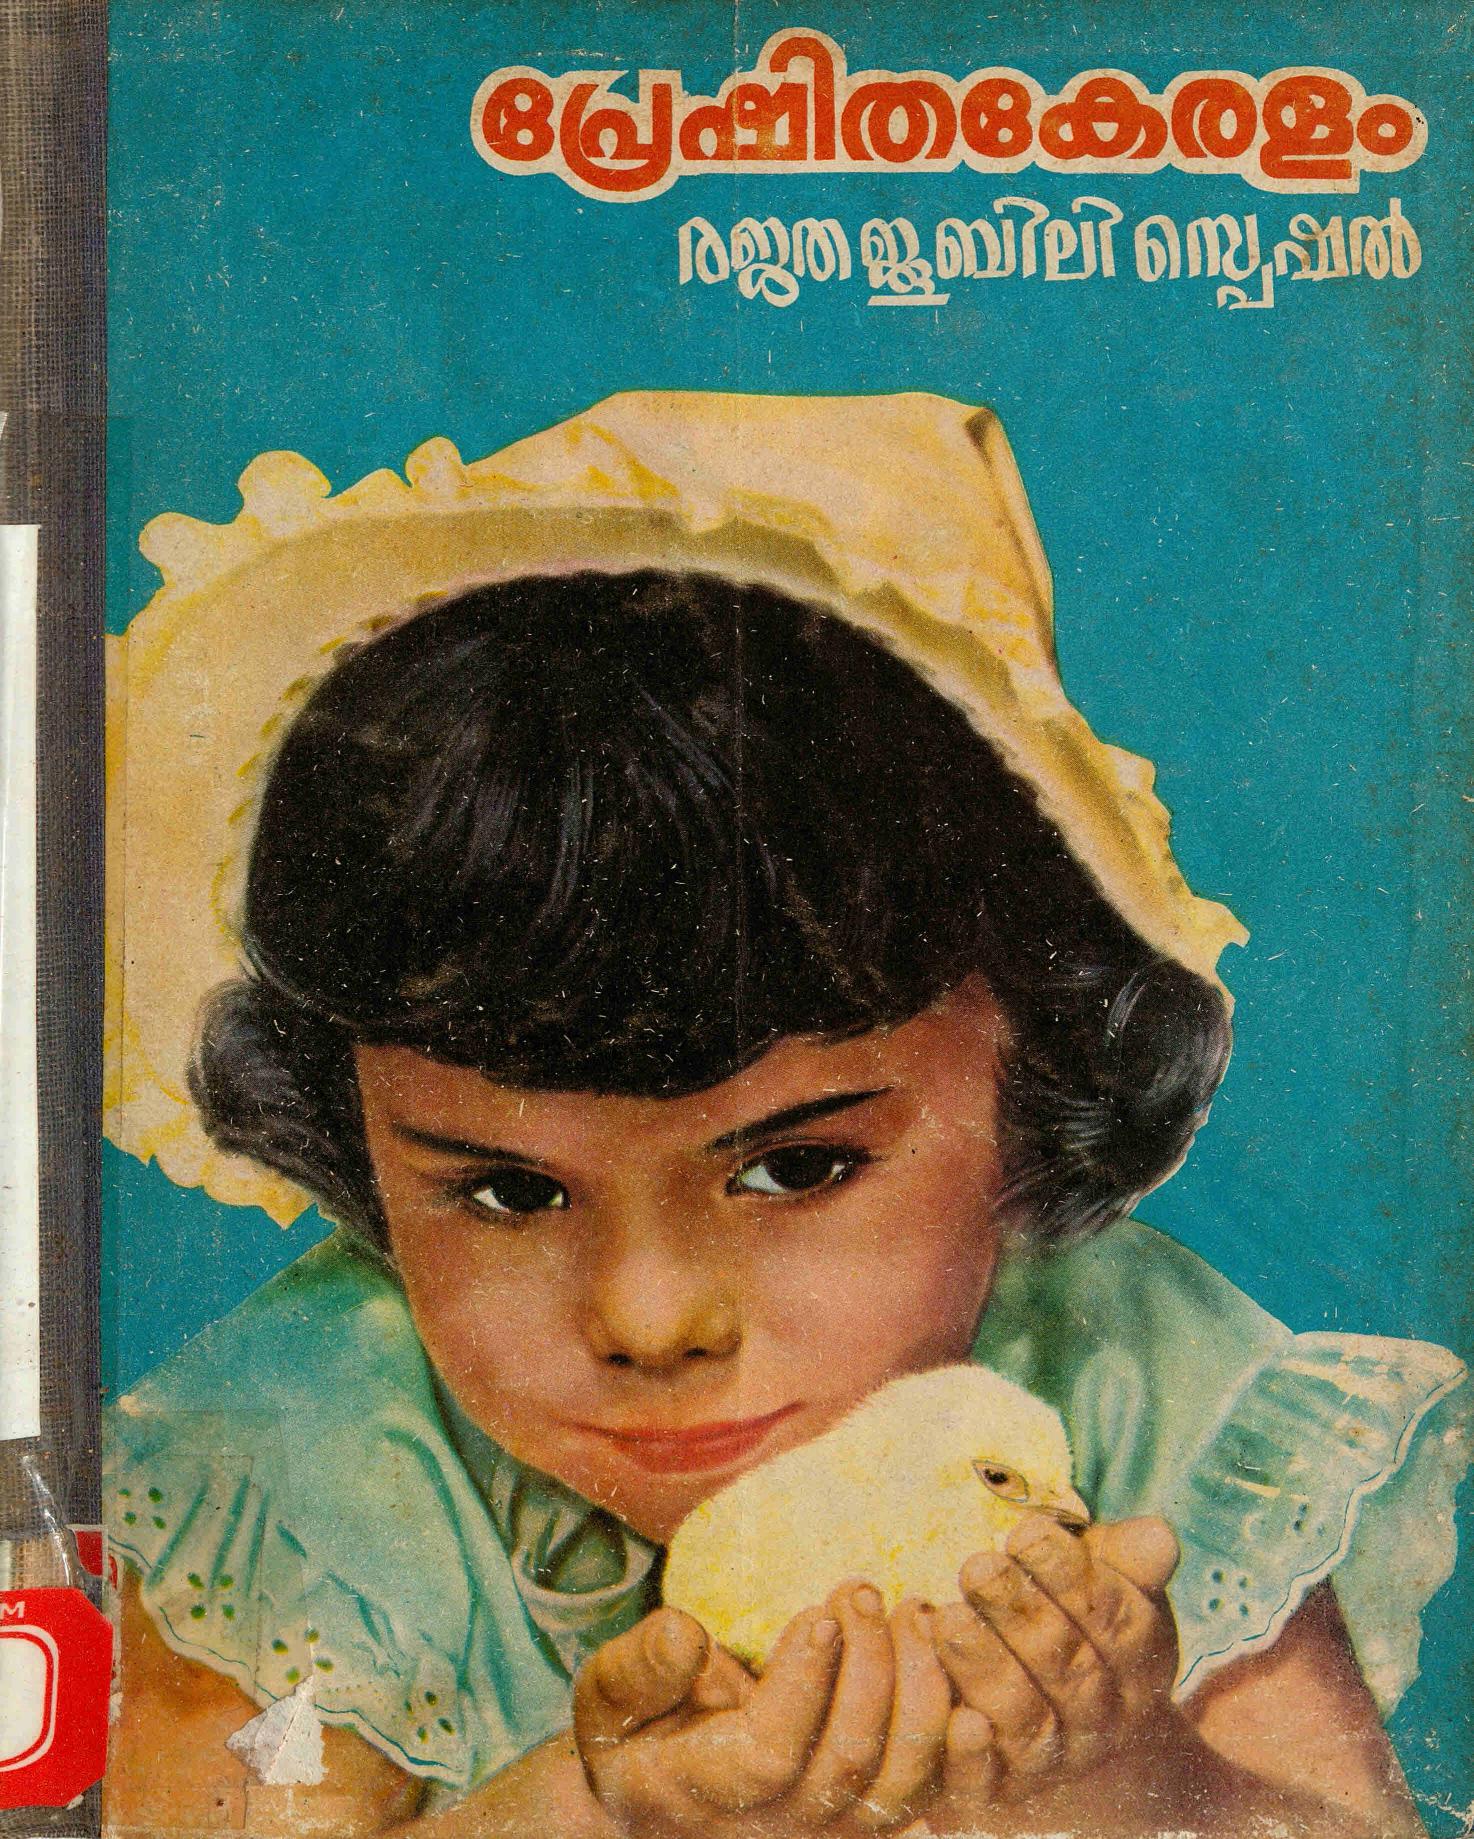 1972 - പ്രേഷിത കേരളം രജതജൂബിലി സ്പെഷൽ